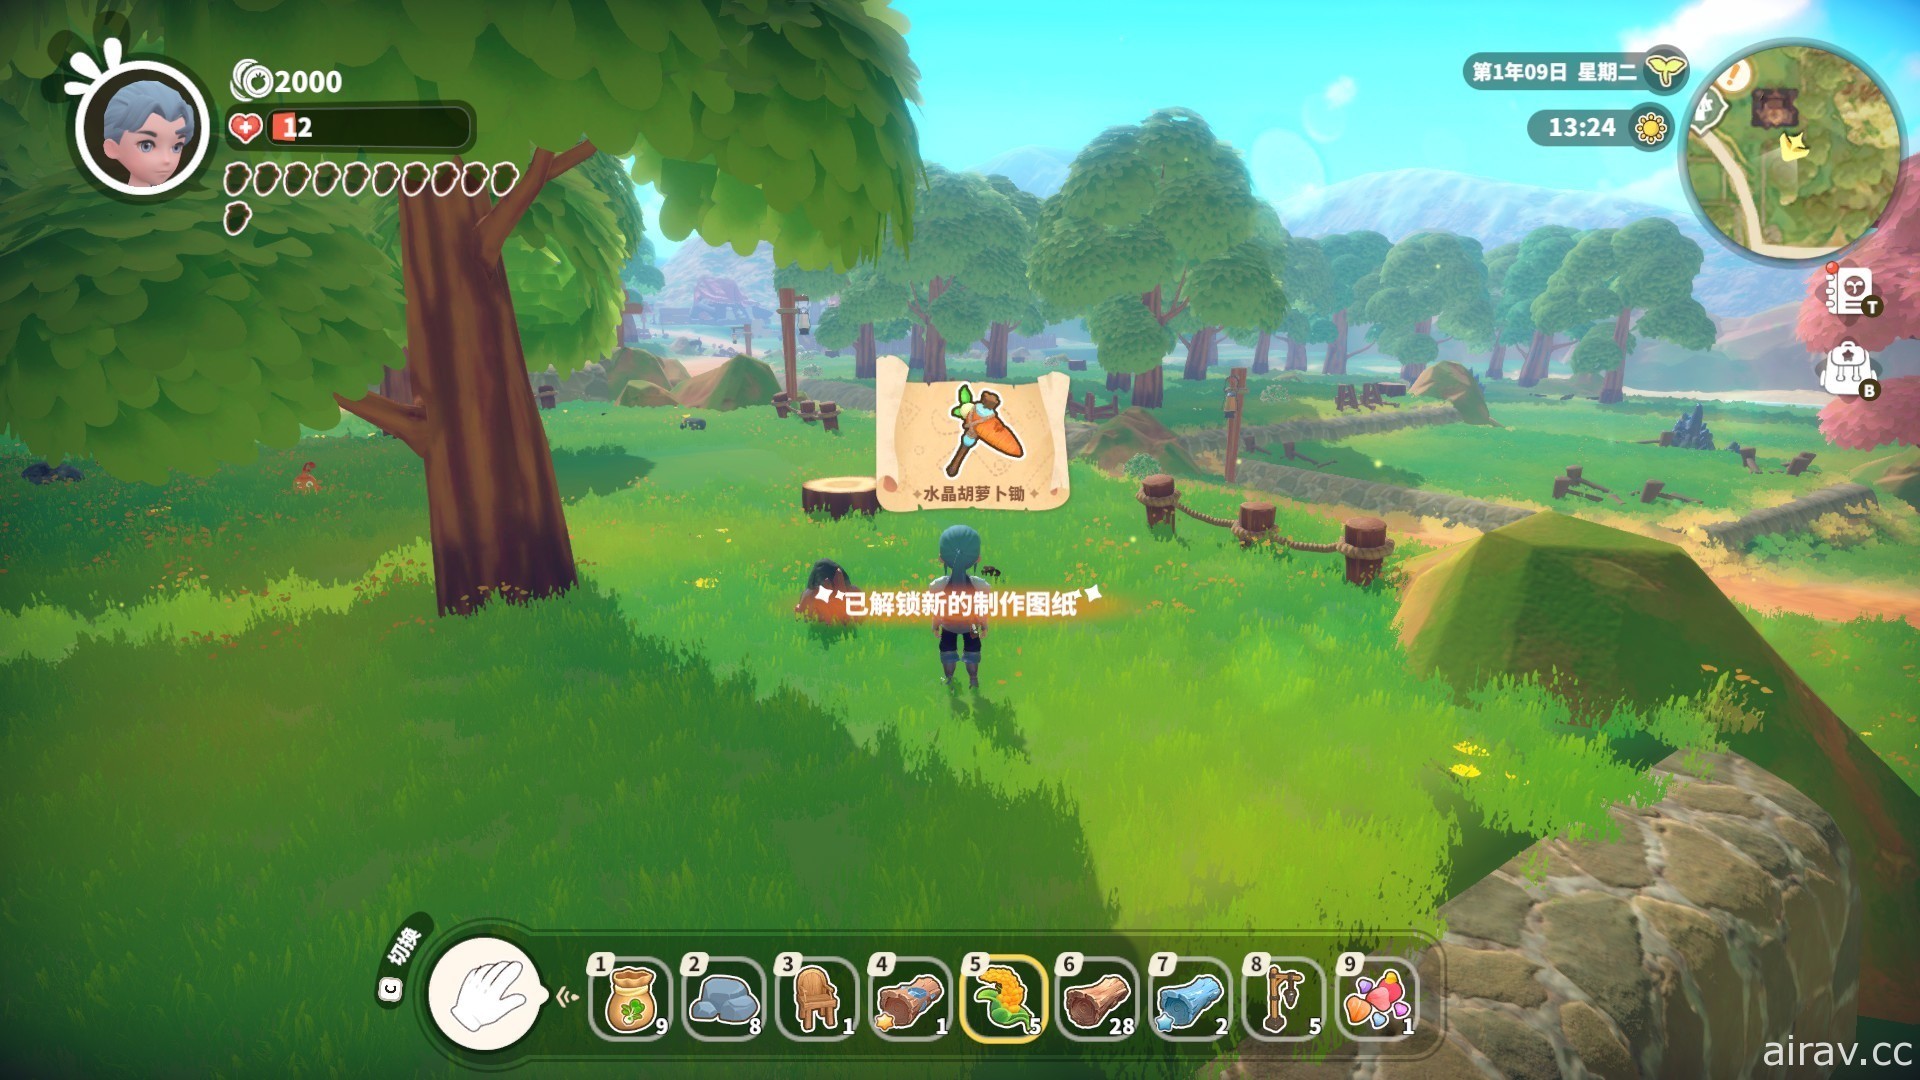 农场模拟游戏新作《牧野之歌》释出试玩版 预定第三季展开抢先体验